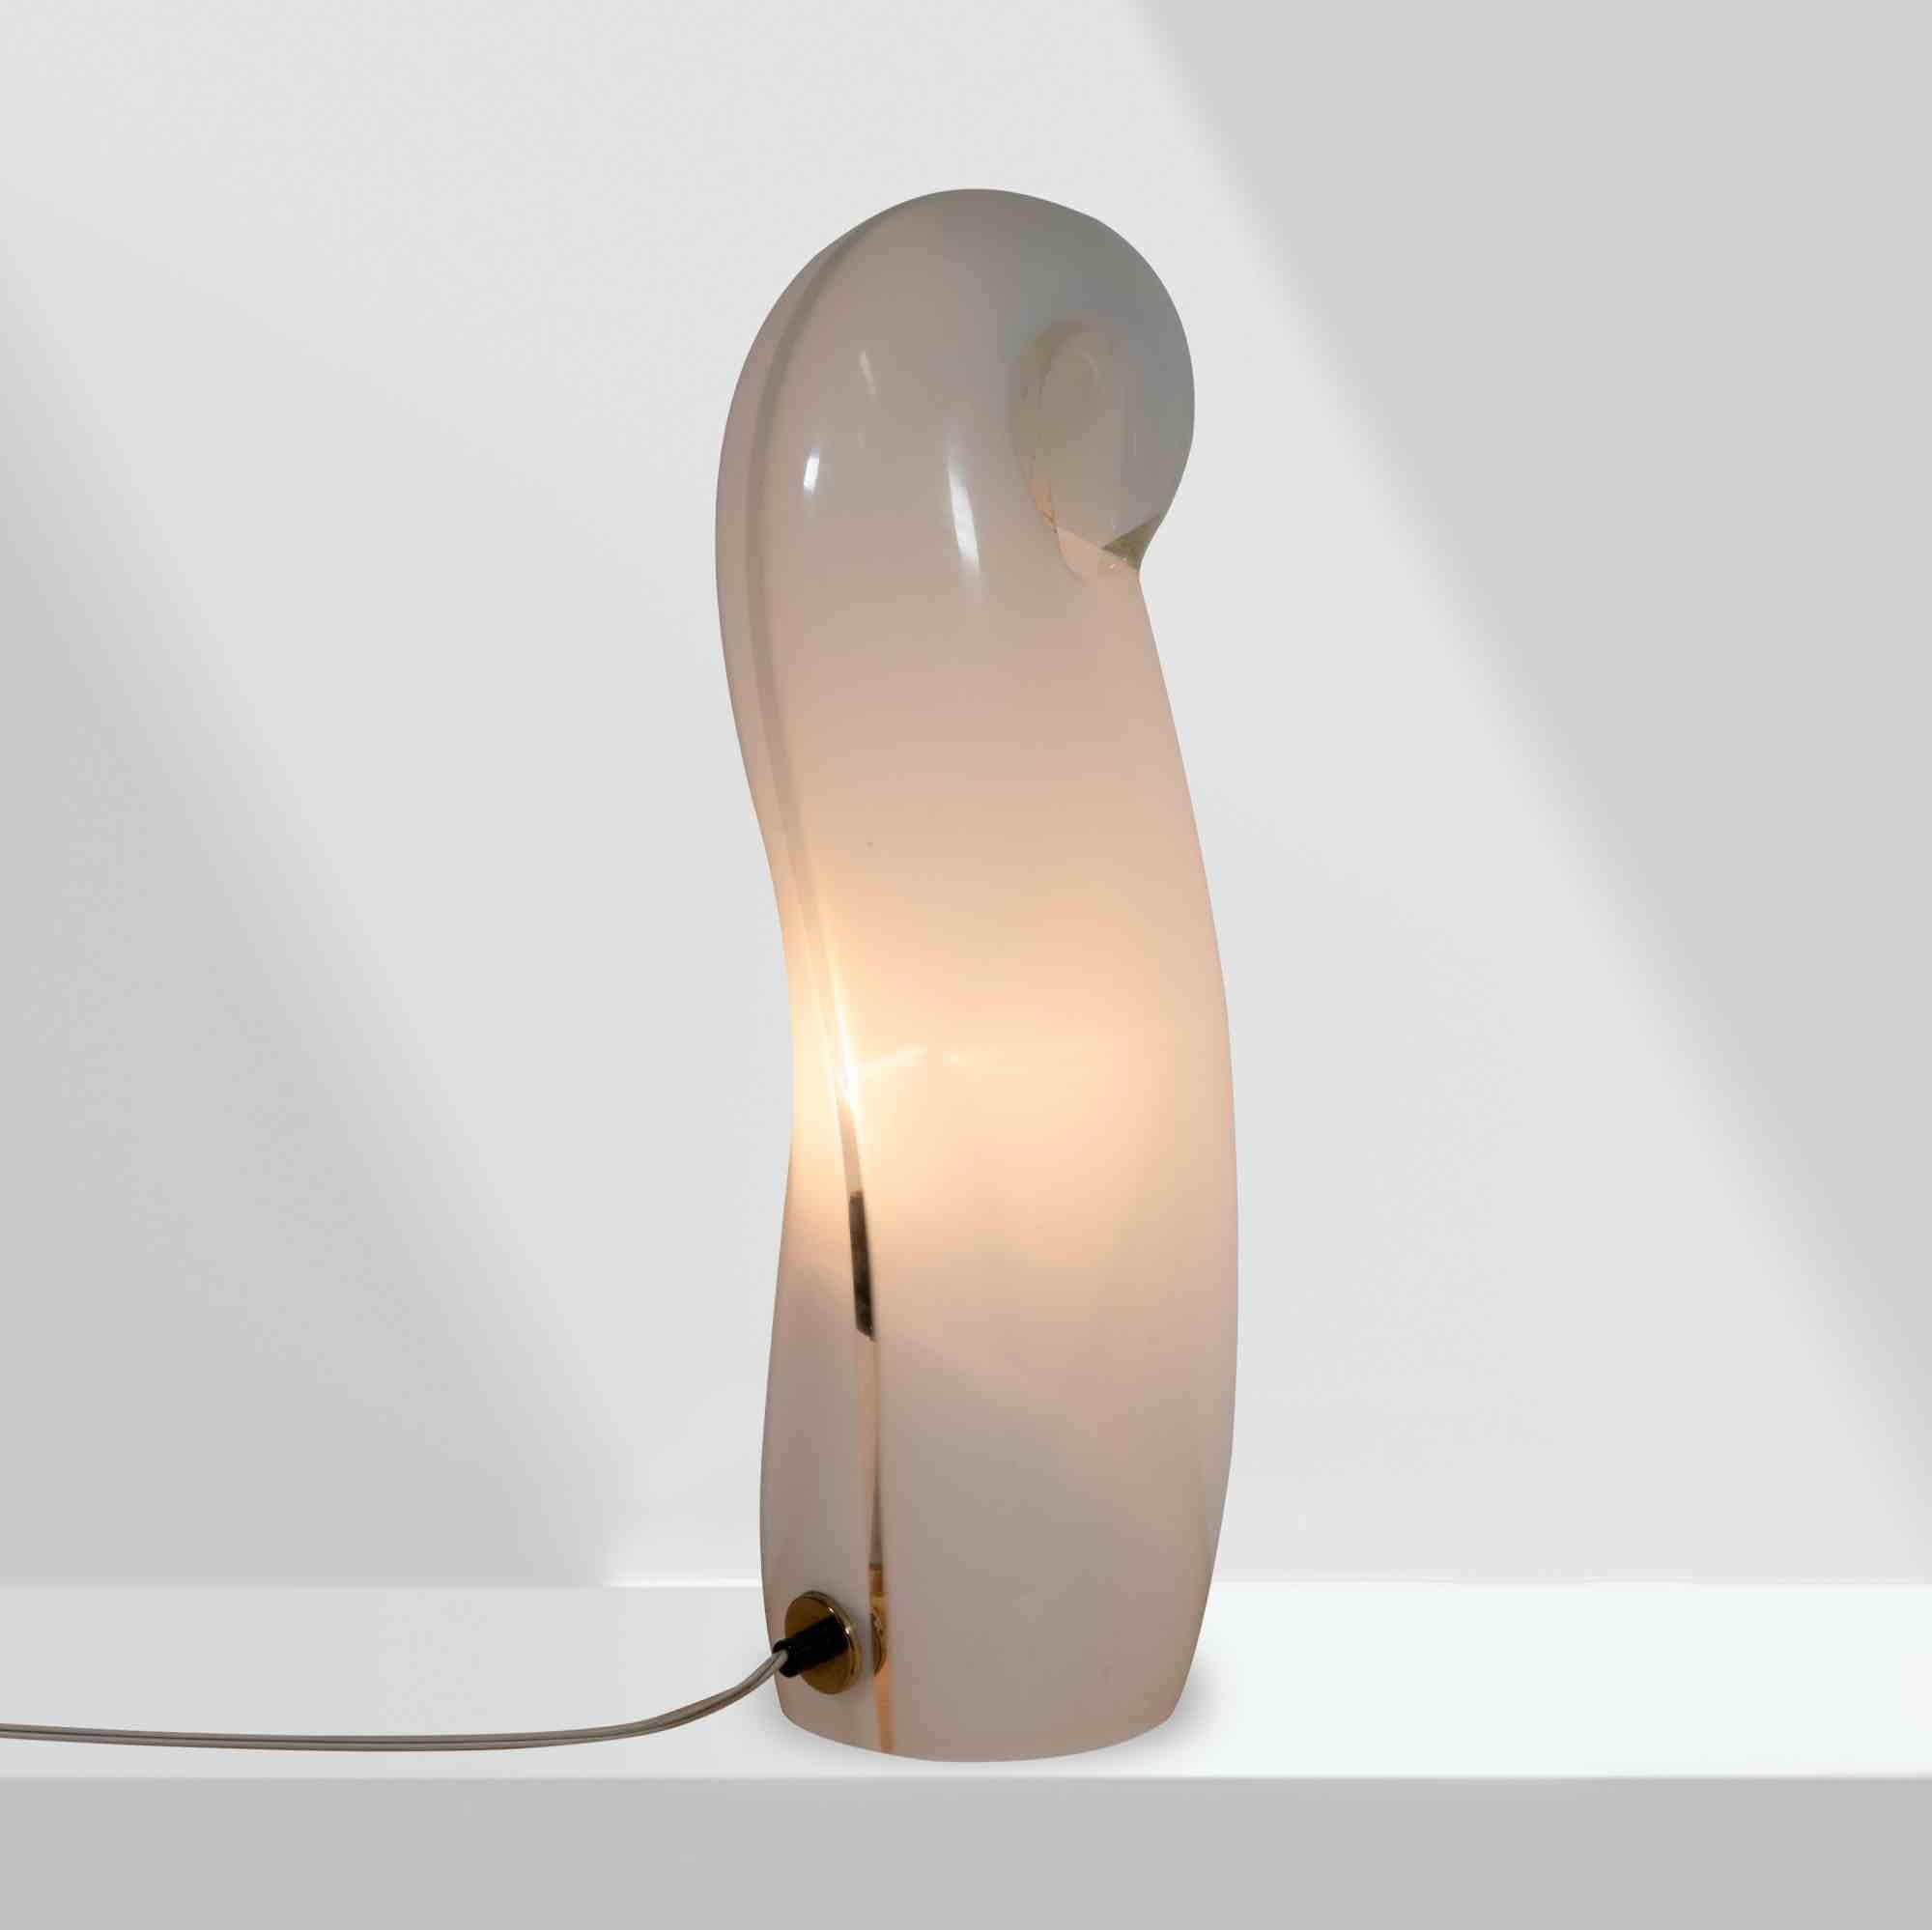 La lampe de table Bigli est un objet de design réalisé dans les années 1970, attribué à Gino Vistosi pour Moda Luce.

Lampe en verre de Murano

Une belle lampe design à collectionner !